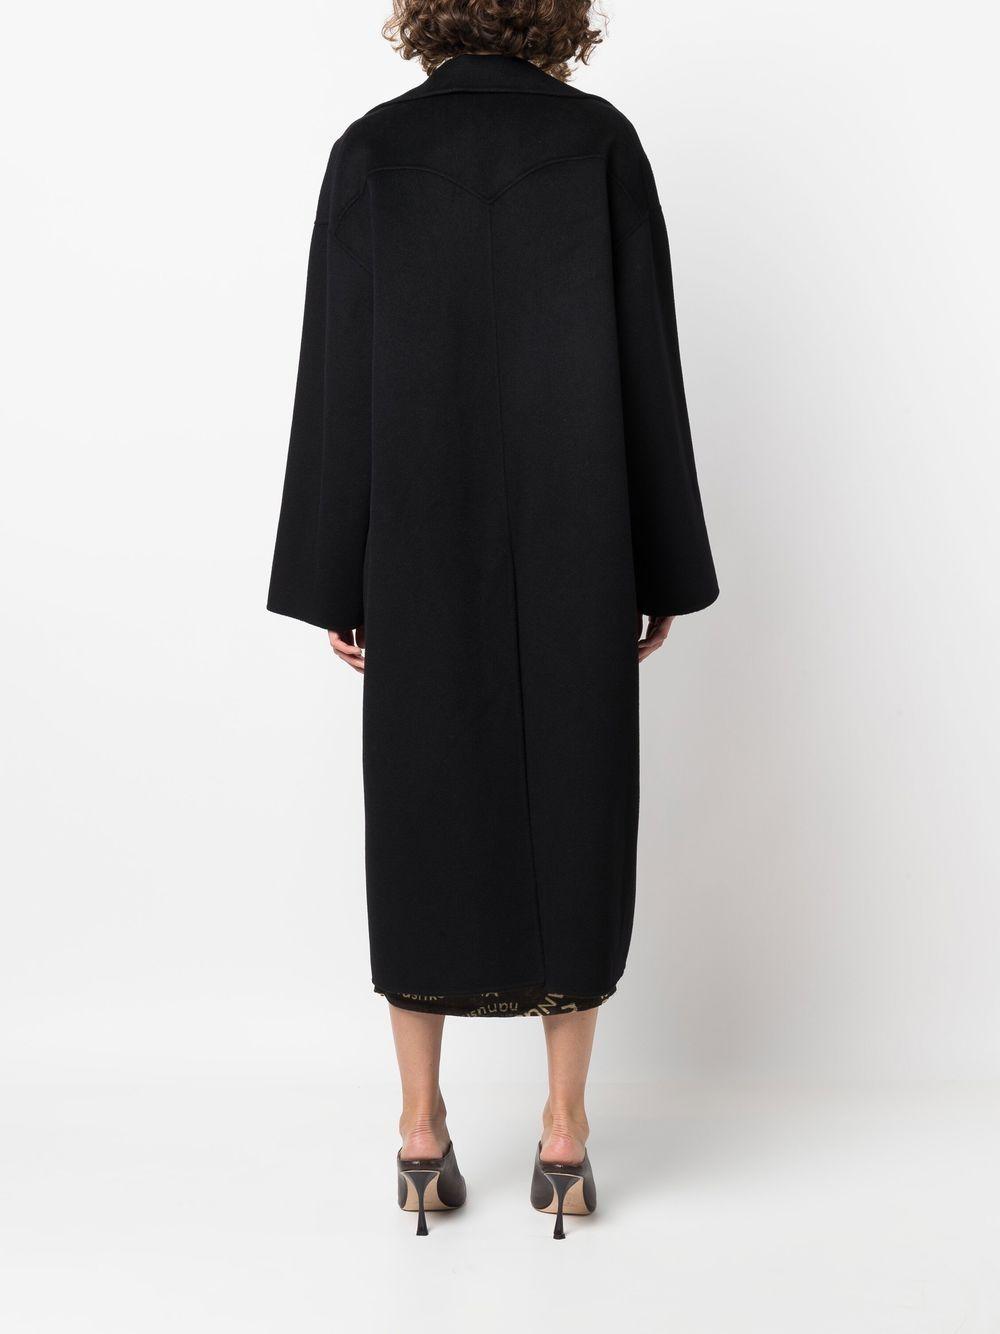 Nanushka Single-breasted Wool Coat in Black Save 26% Womens Coats Nanushka Coats 